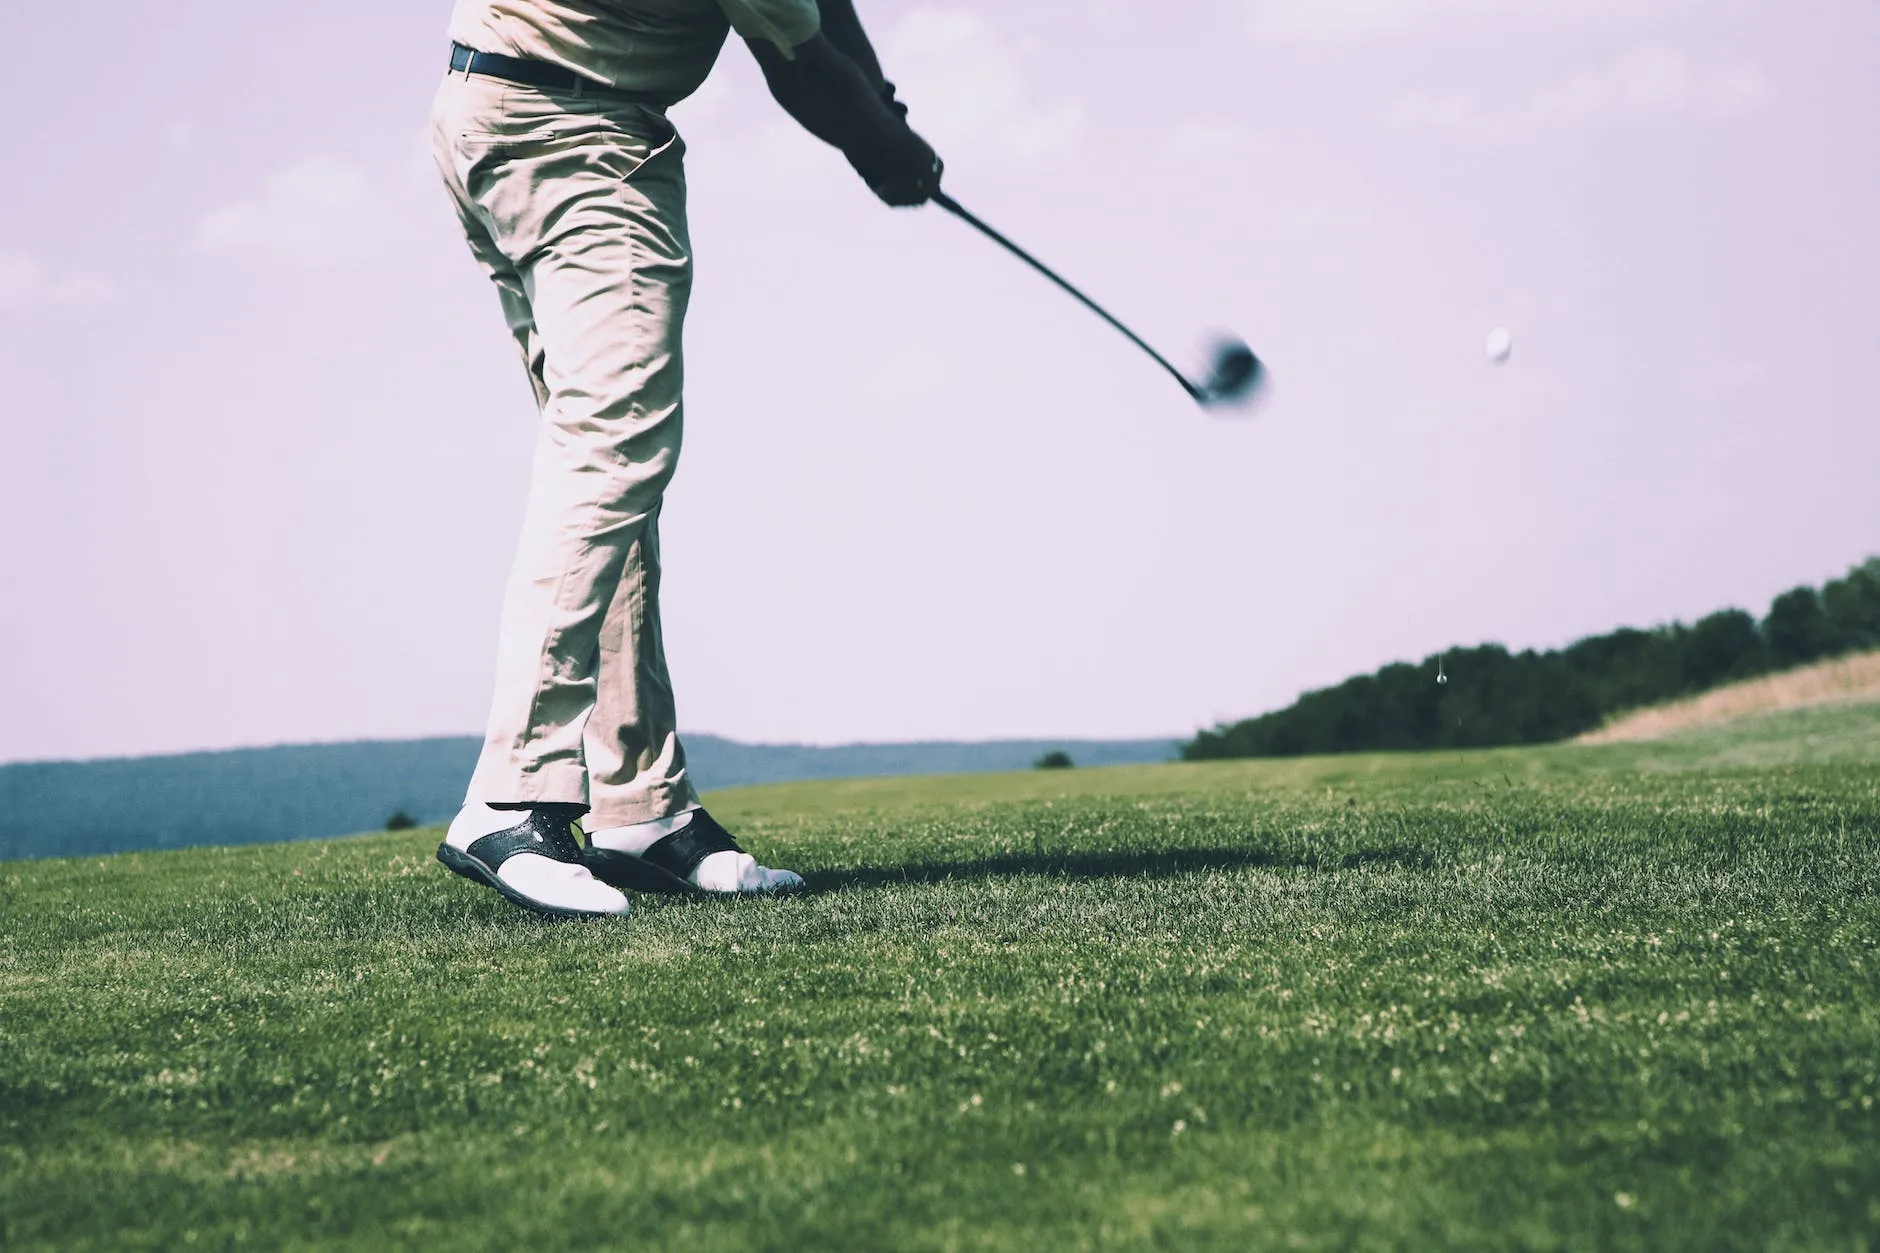 ¿Qué beneficios tiene el golf?